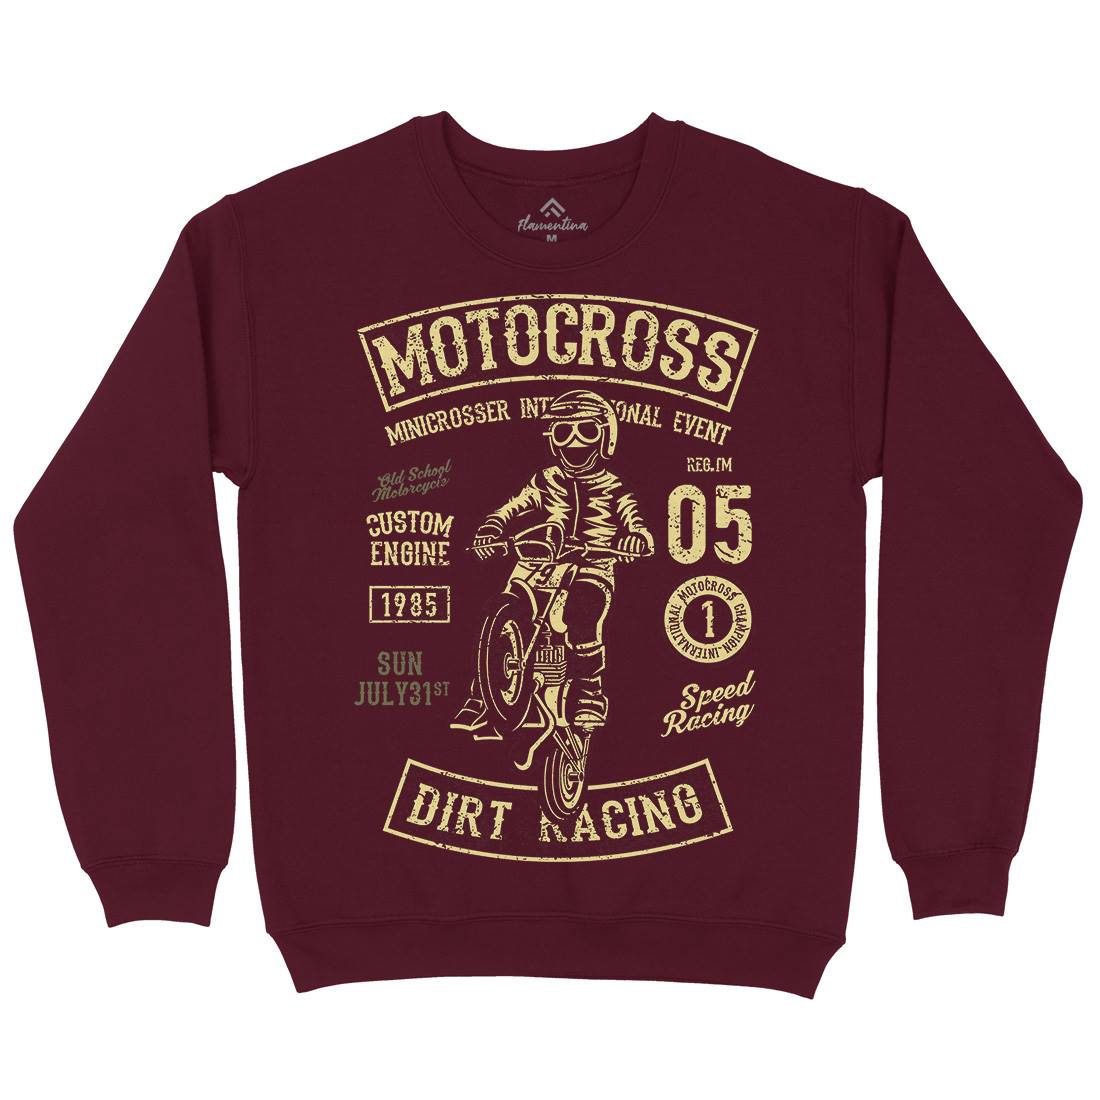 Moto Cross Mens Crew Neck Sweatshirt Motorcycles A089